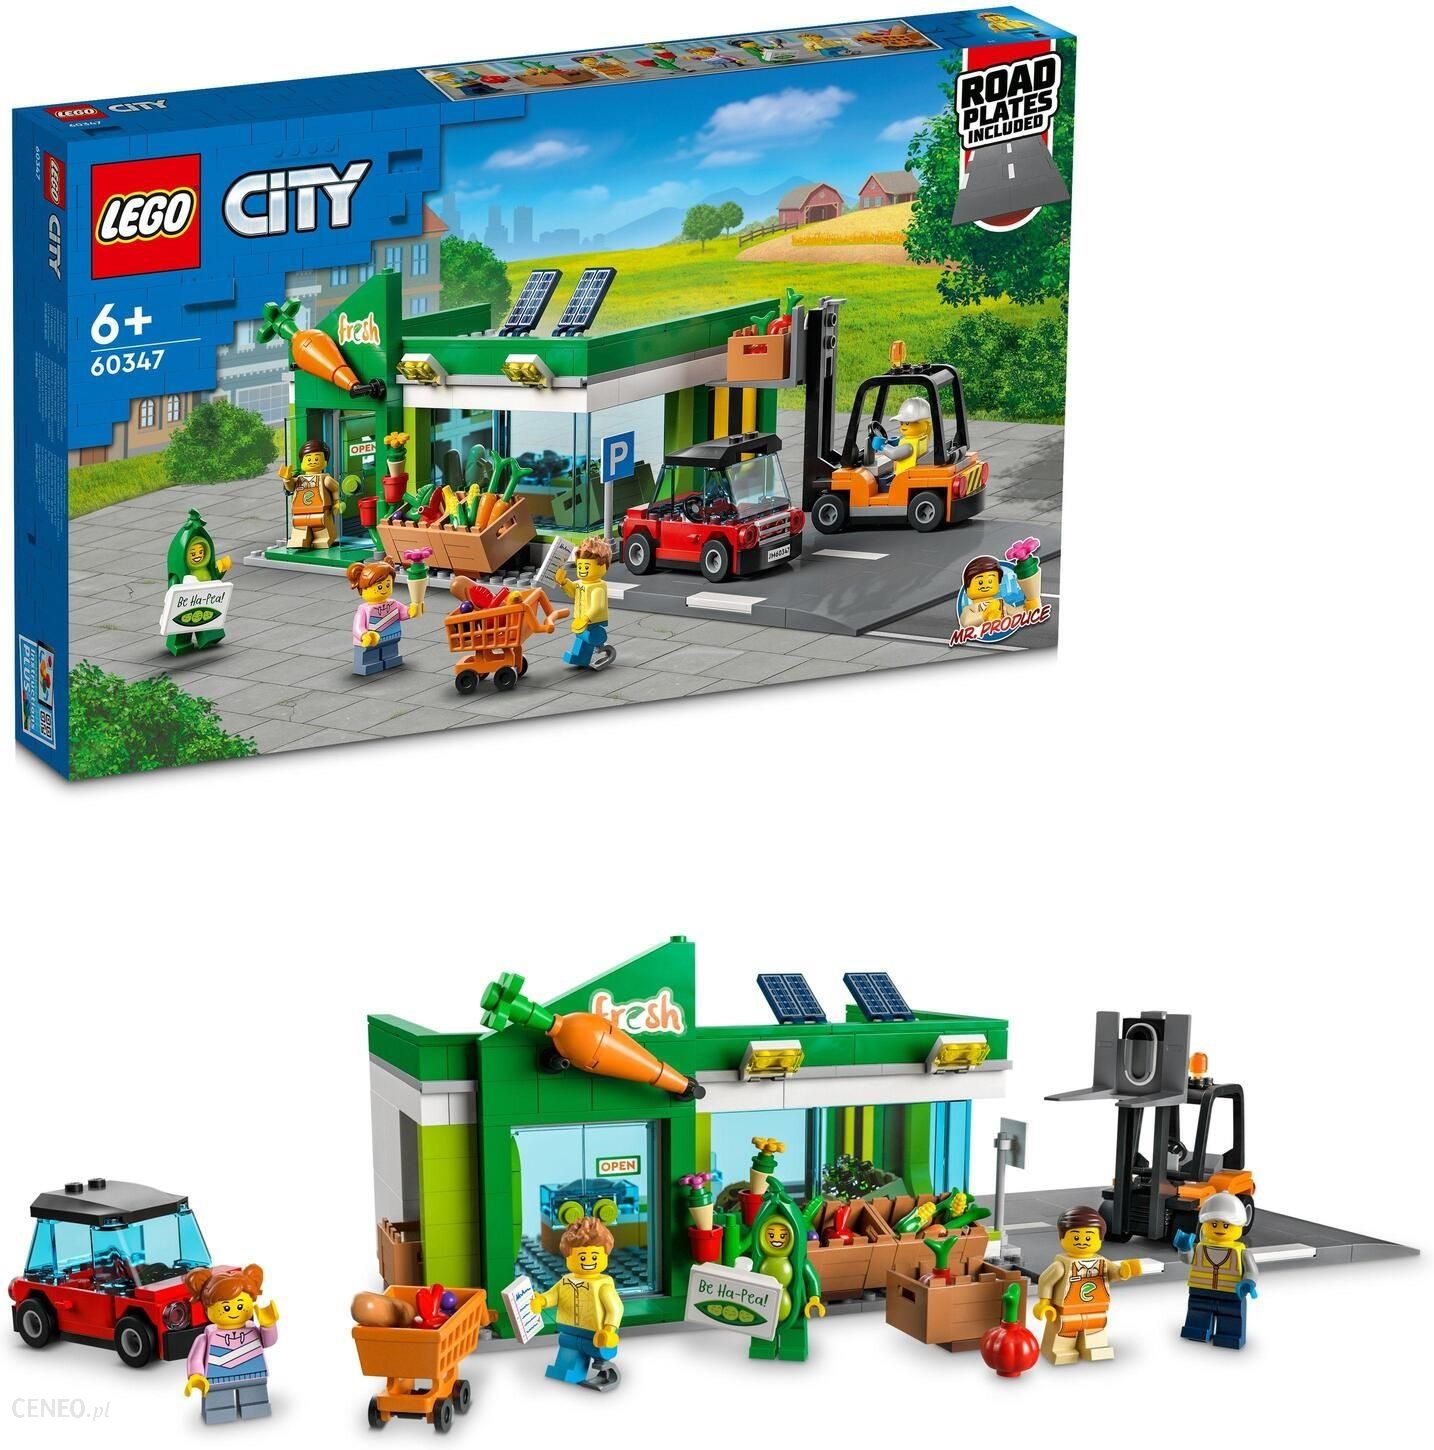 tag på sightseeing patrulje mekanisme LEGO City 60347 Sklep spożywczy - ceny, opinie i recenzje -  klockidladzieci.pl